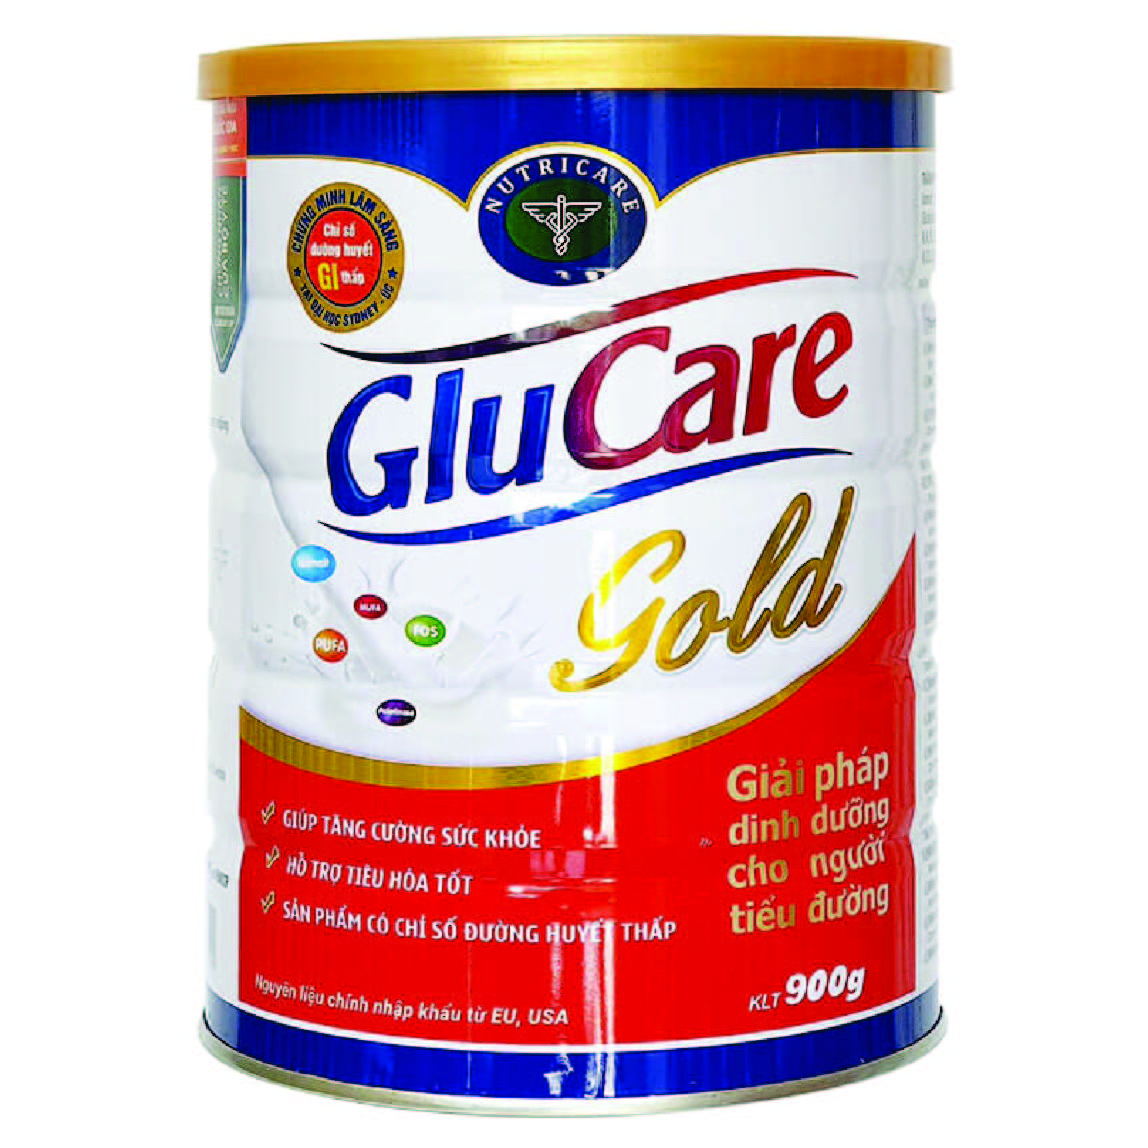 Glucare Gold